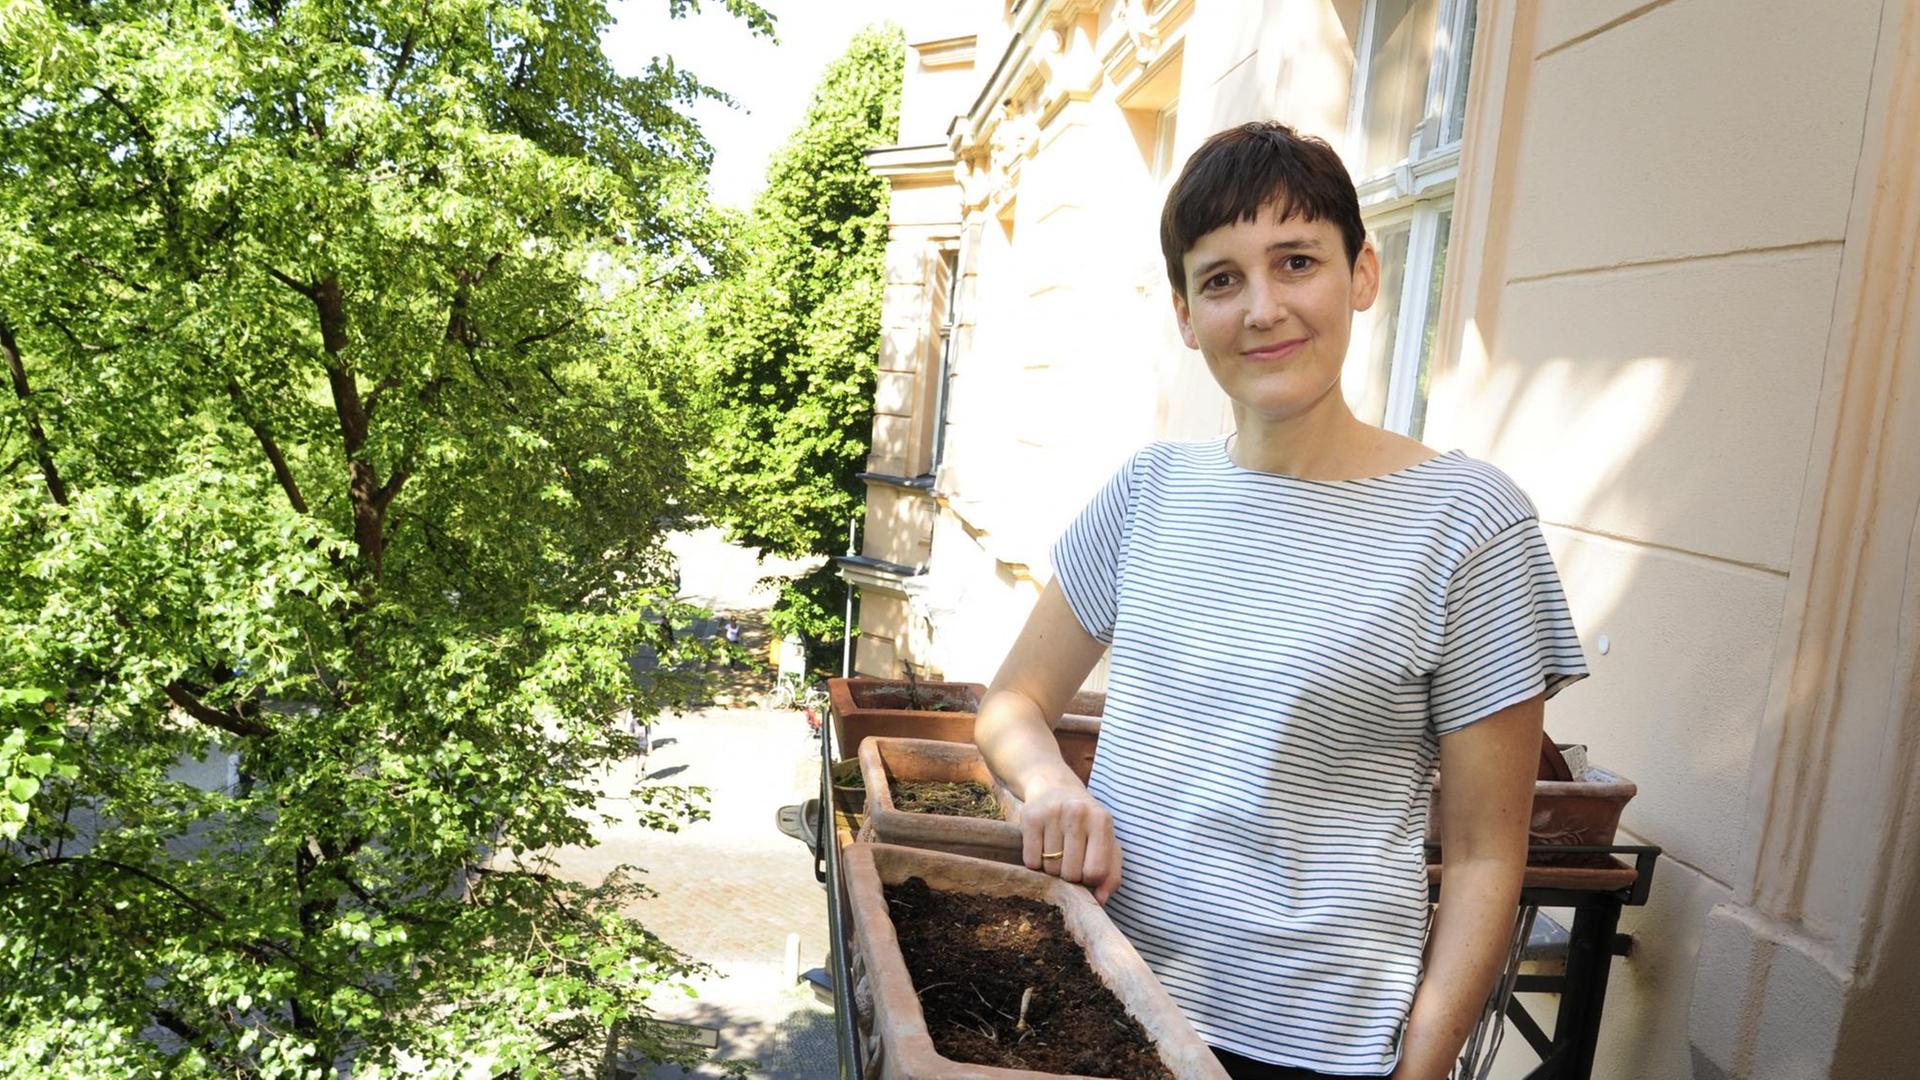 Die Schriftstellerin Anke Stelling auf ihrem Balkon im Berliner Stadtteil Prenzlauer Berg